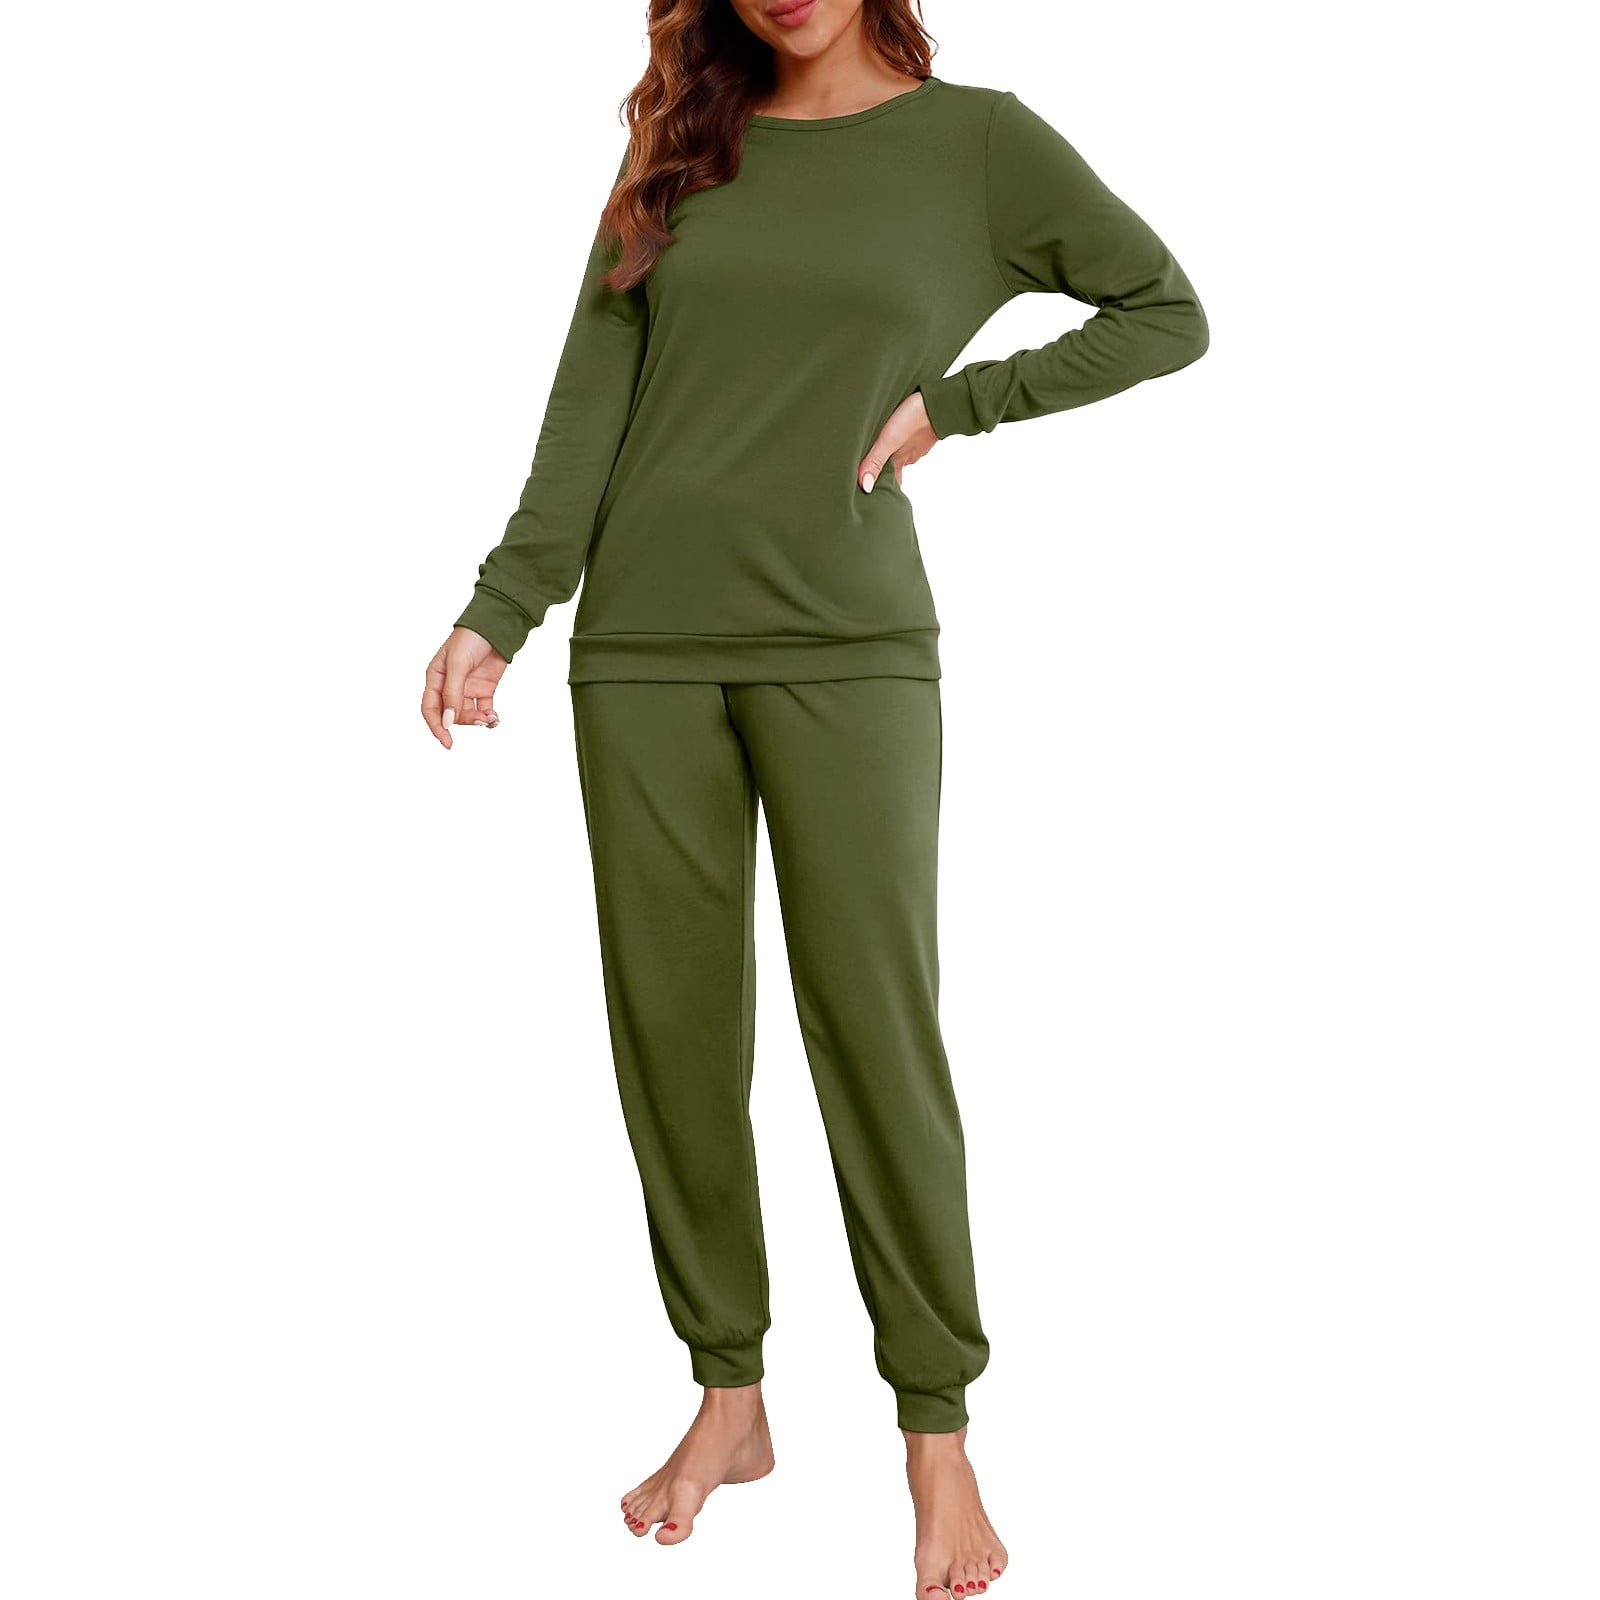 Women Sleepwear Womens Pajama Set Long Sleeve Sleepwear Nightwear Soft ...